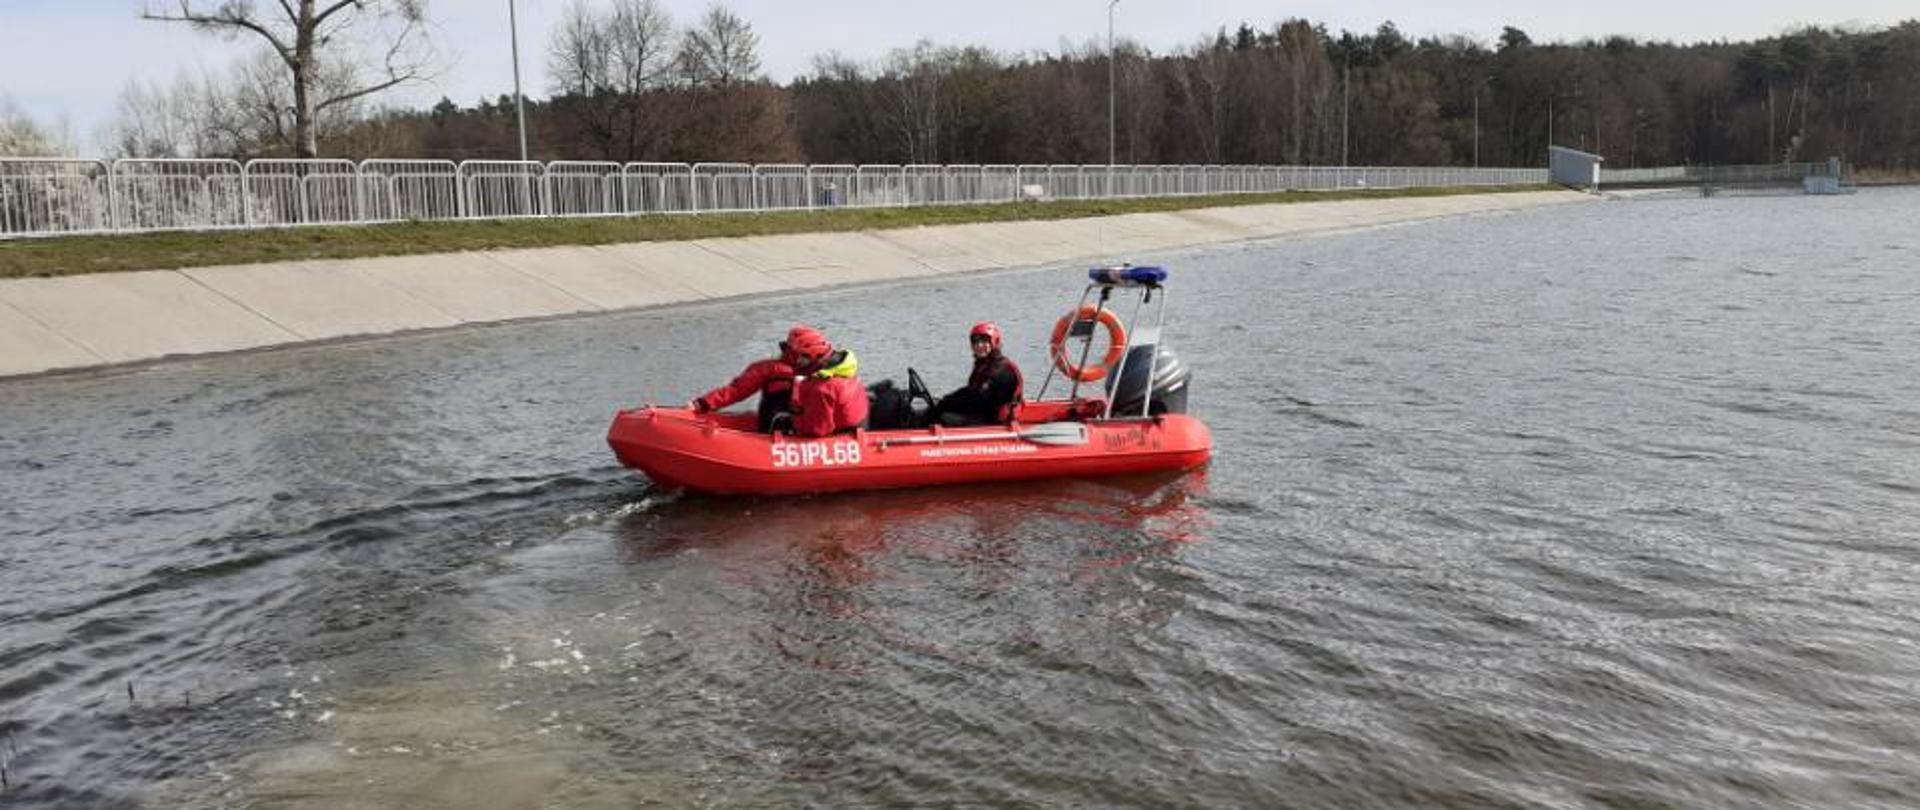 Trzech strażaków w ubraniach ochronych, kaskach i kamizelkach ratunkowych płynie po jeziorze w czerwonej łodzi motorowej. w tle widoczna tama i las